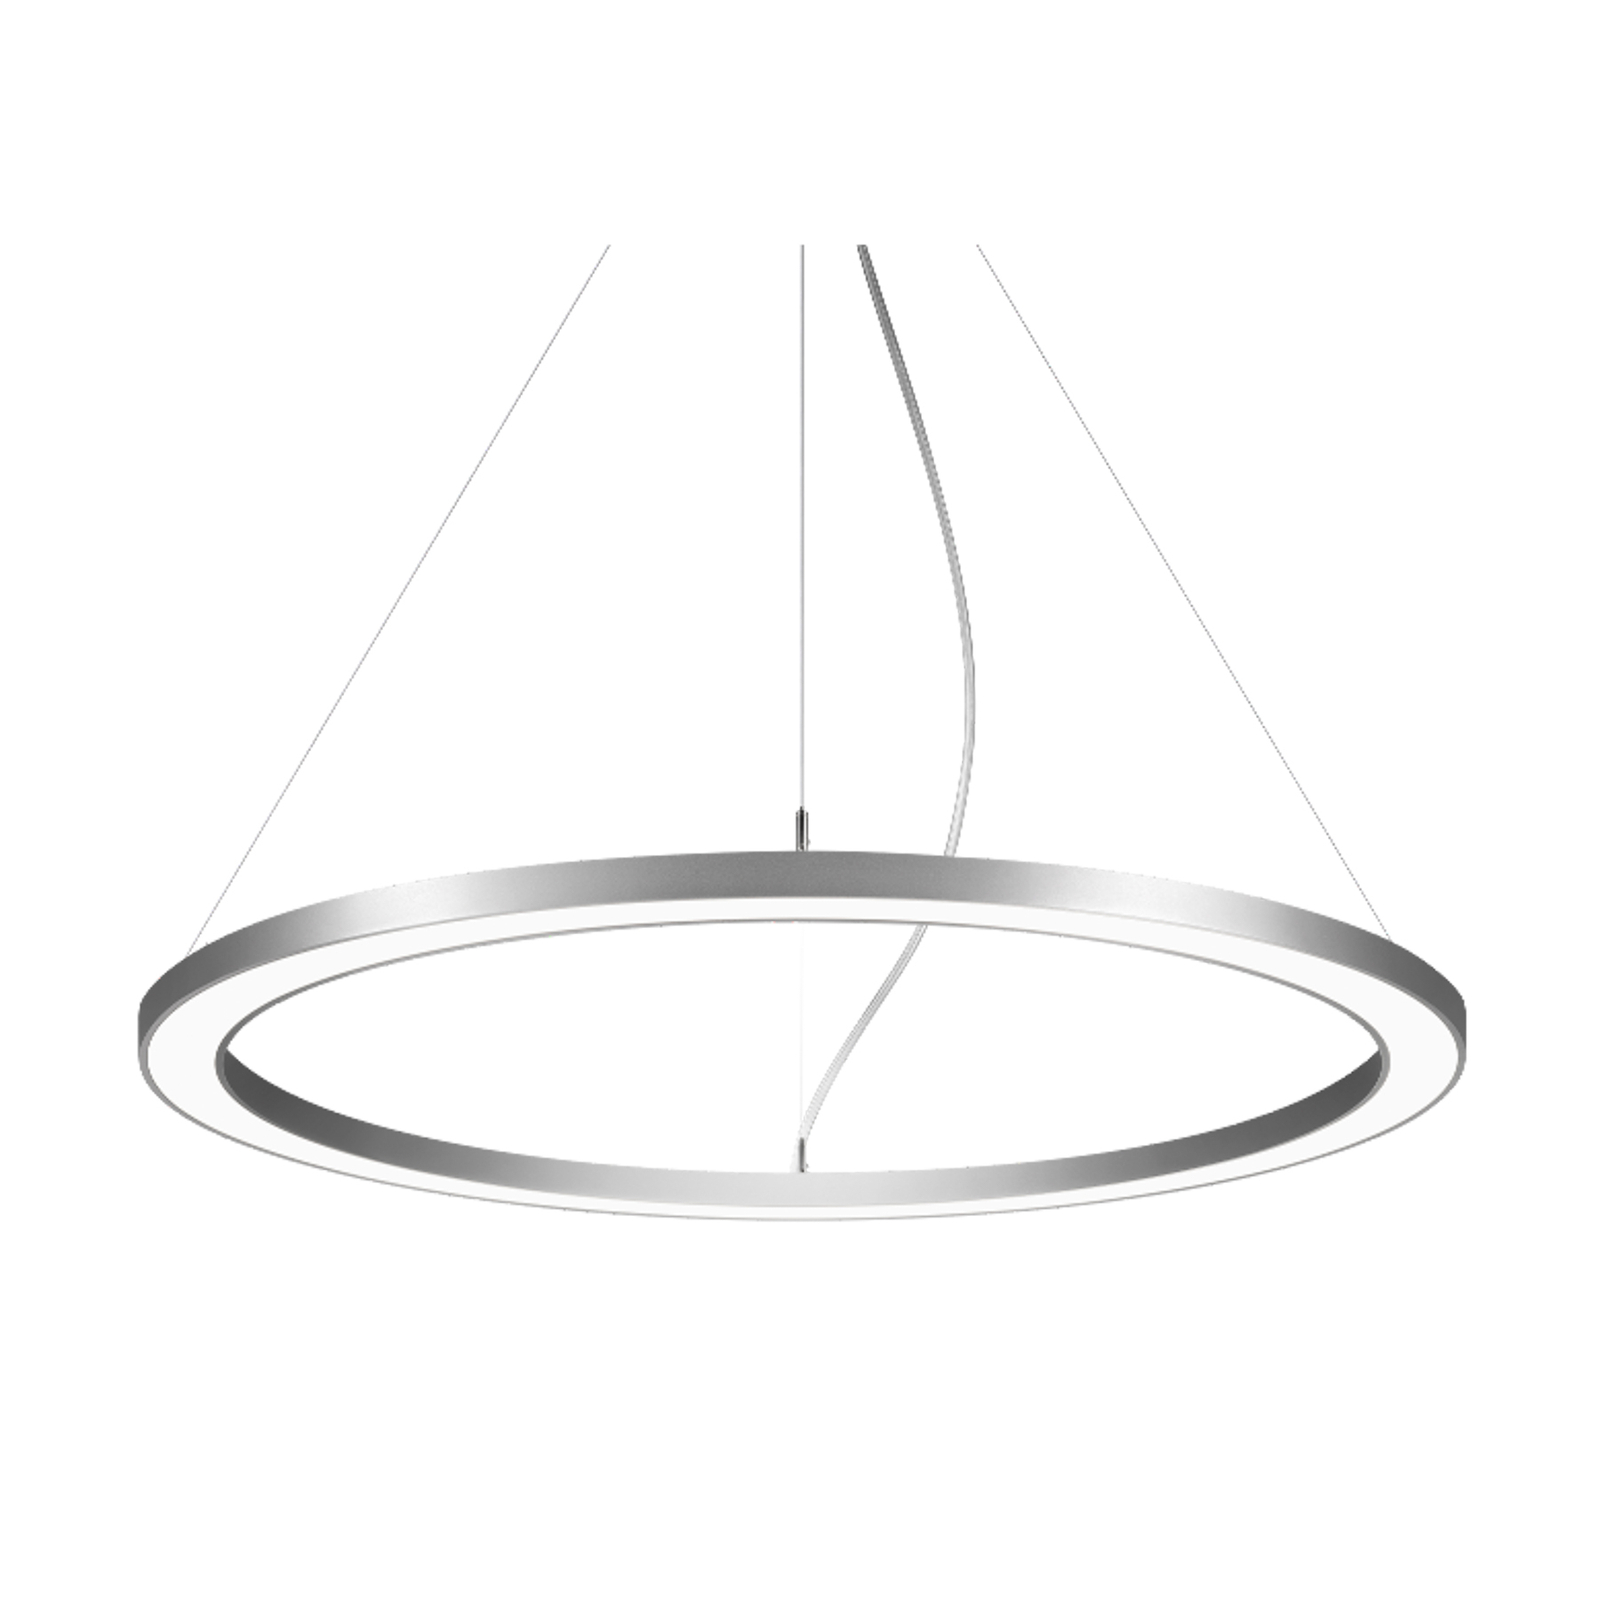 BRUMBERG Biro Circle Ring 3.5 izravni Ø 45 cm uključeno/isključeno srebro